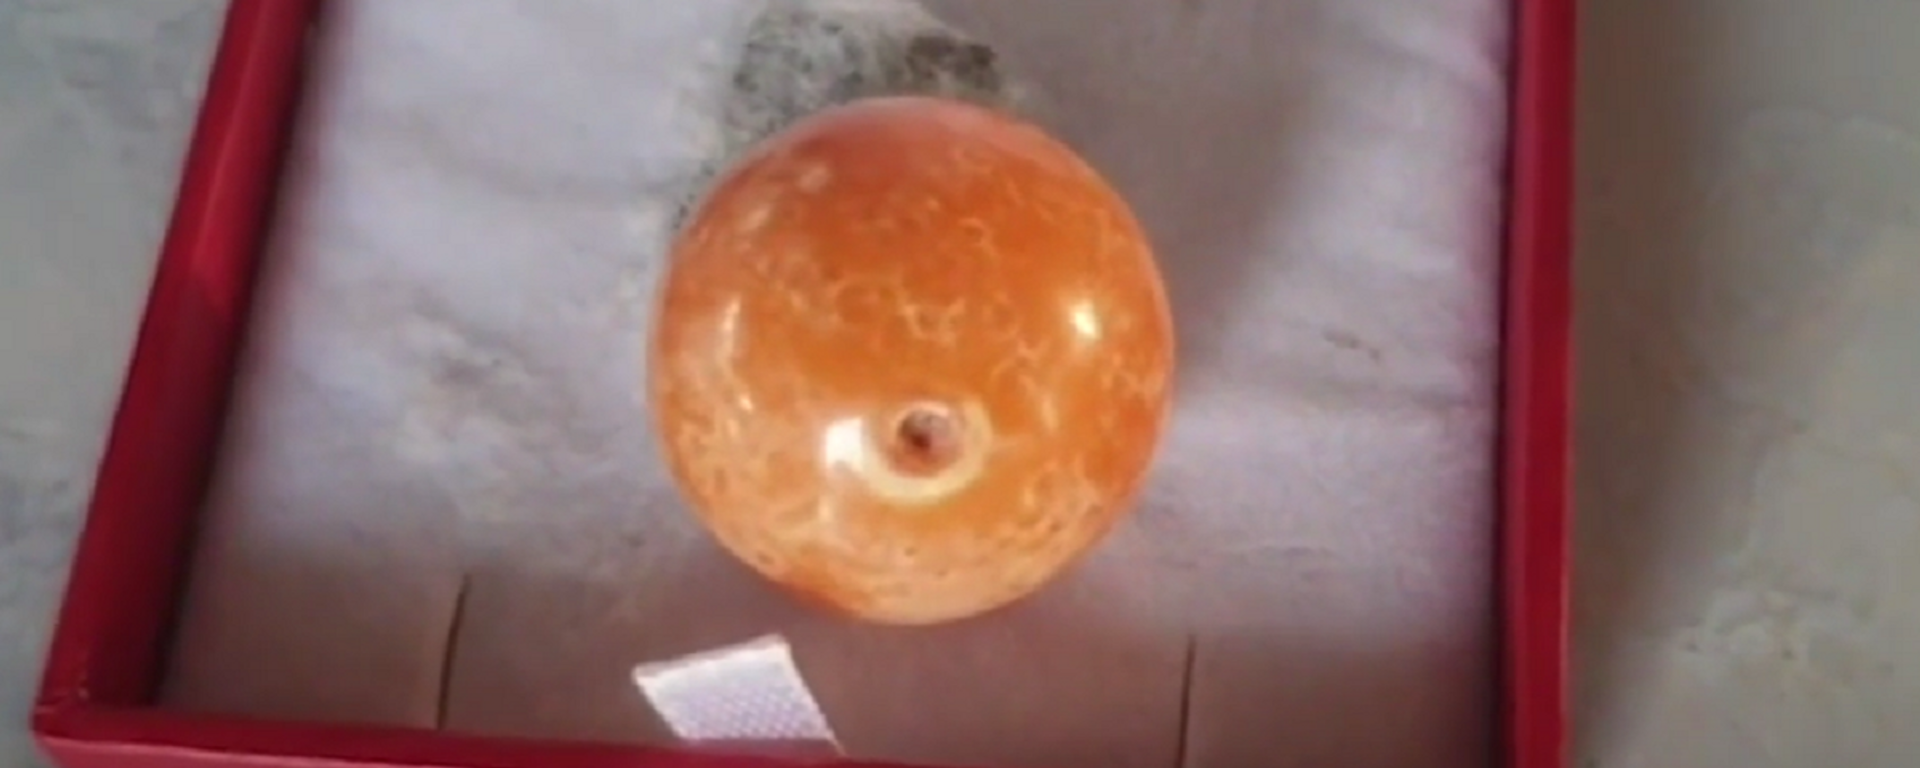 Un rara perla naranja, encontrada en Tailandia por unos pescadores - Sputnik Mundo, 1920, 08.02.2021